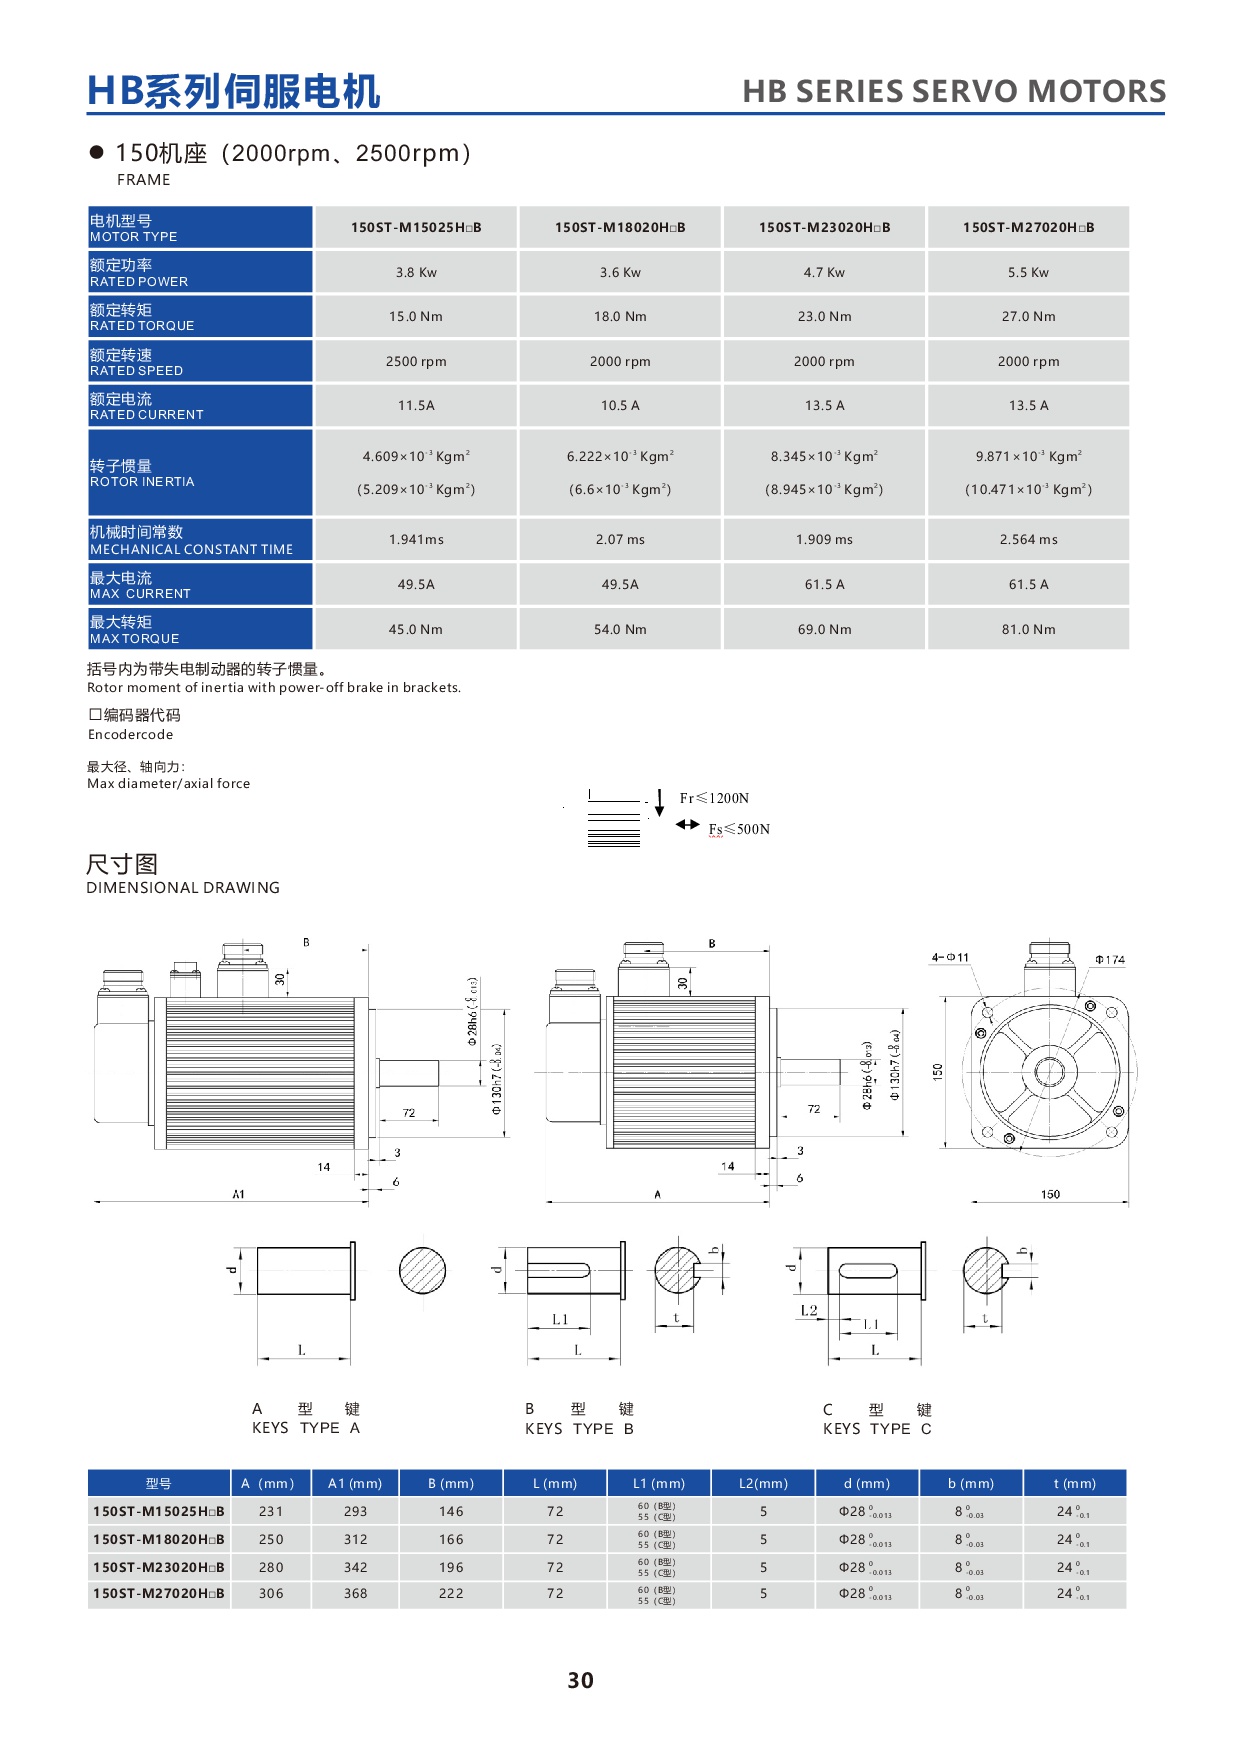 产品特性-28-HBseries150STservomotor